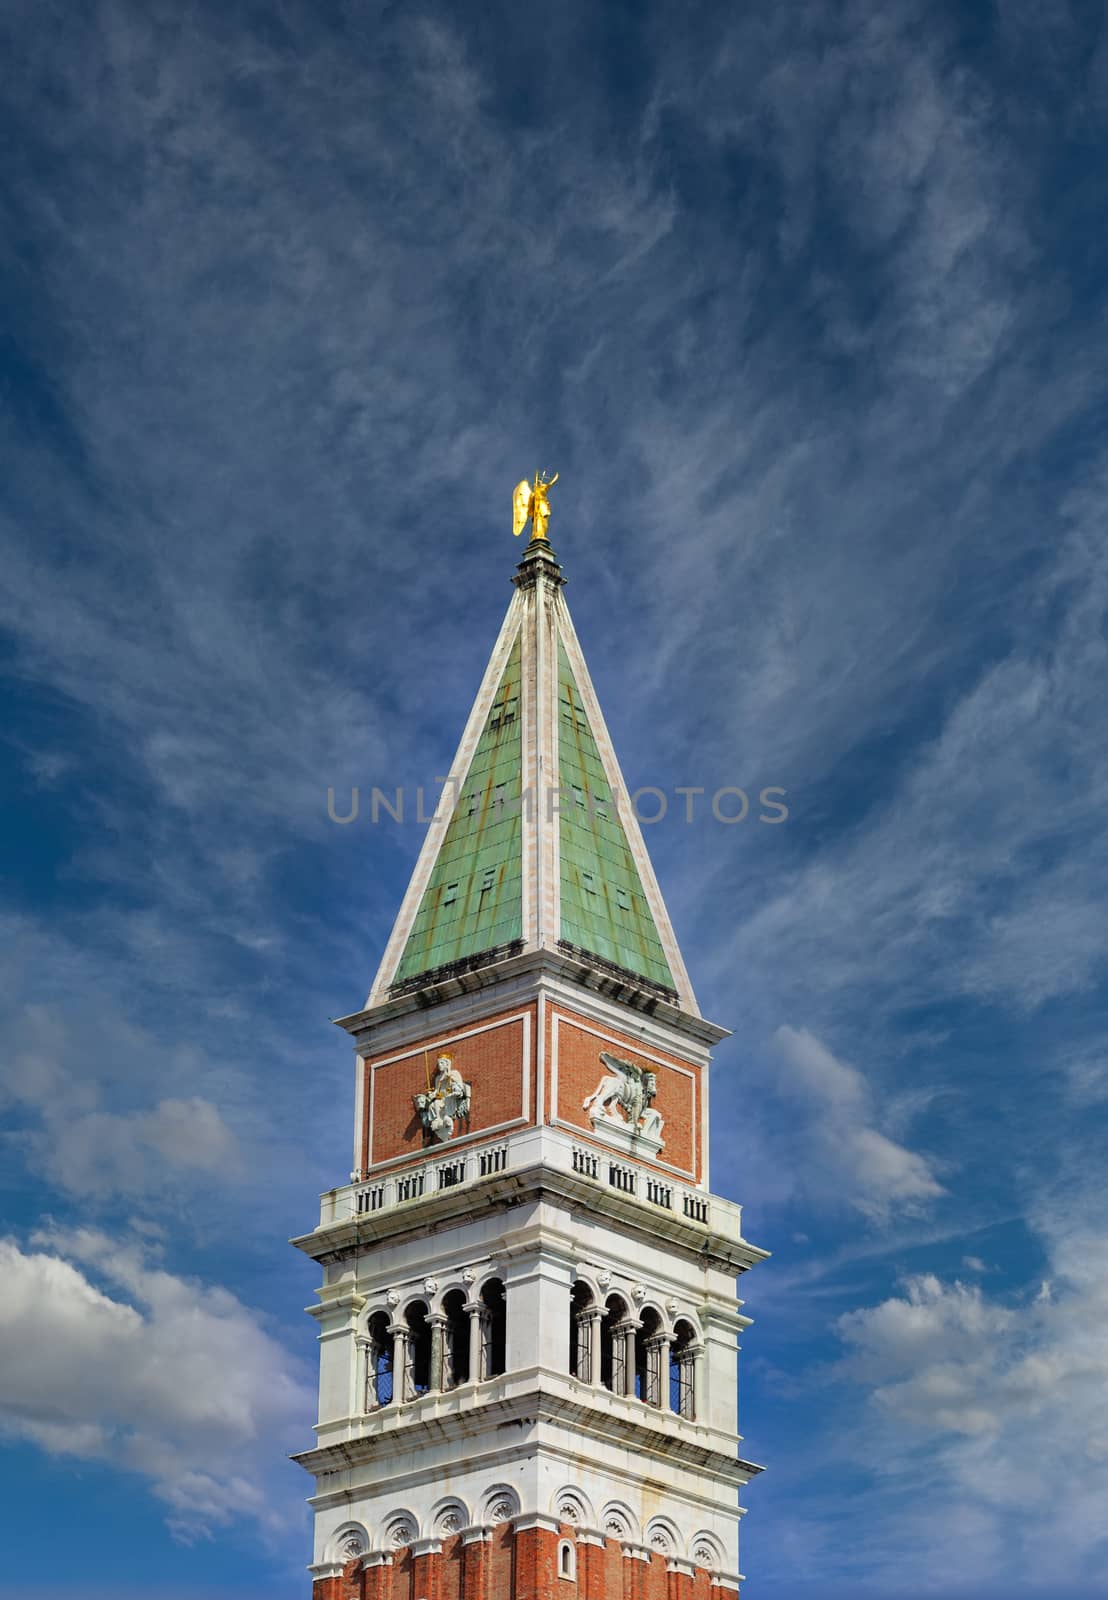 Venice's Saint Marks Bell Tower Against a Nice Sky